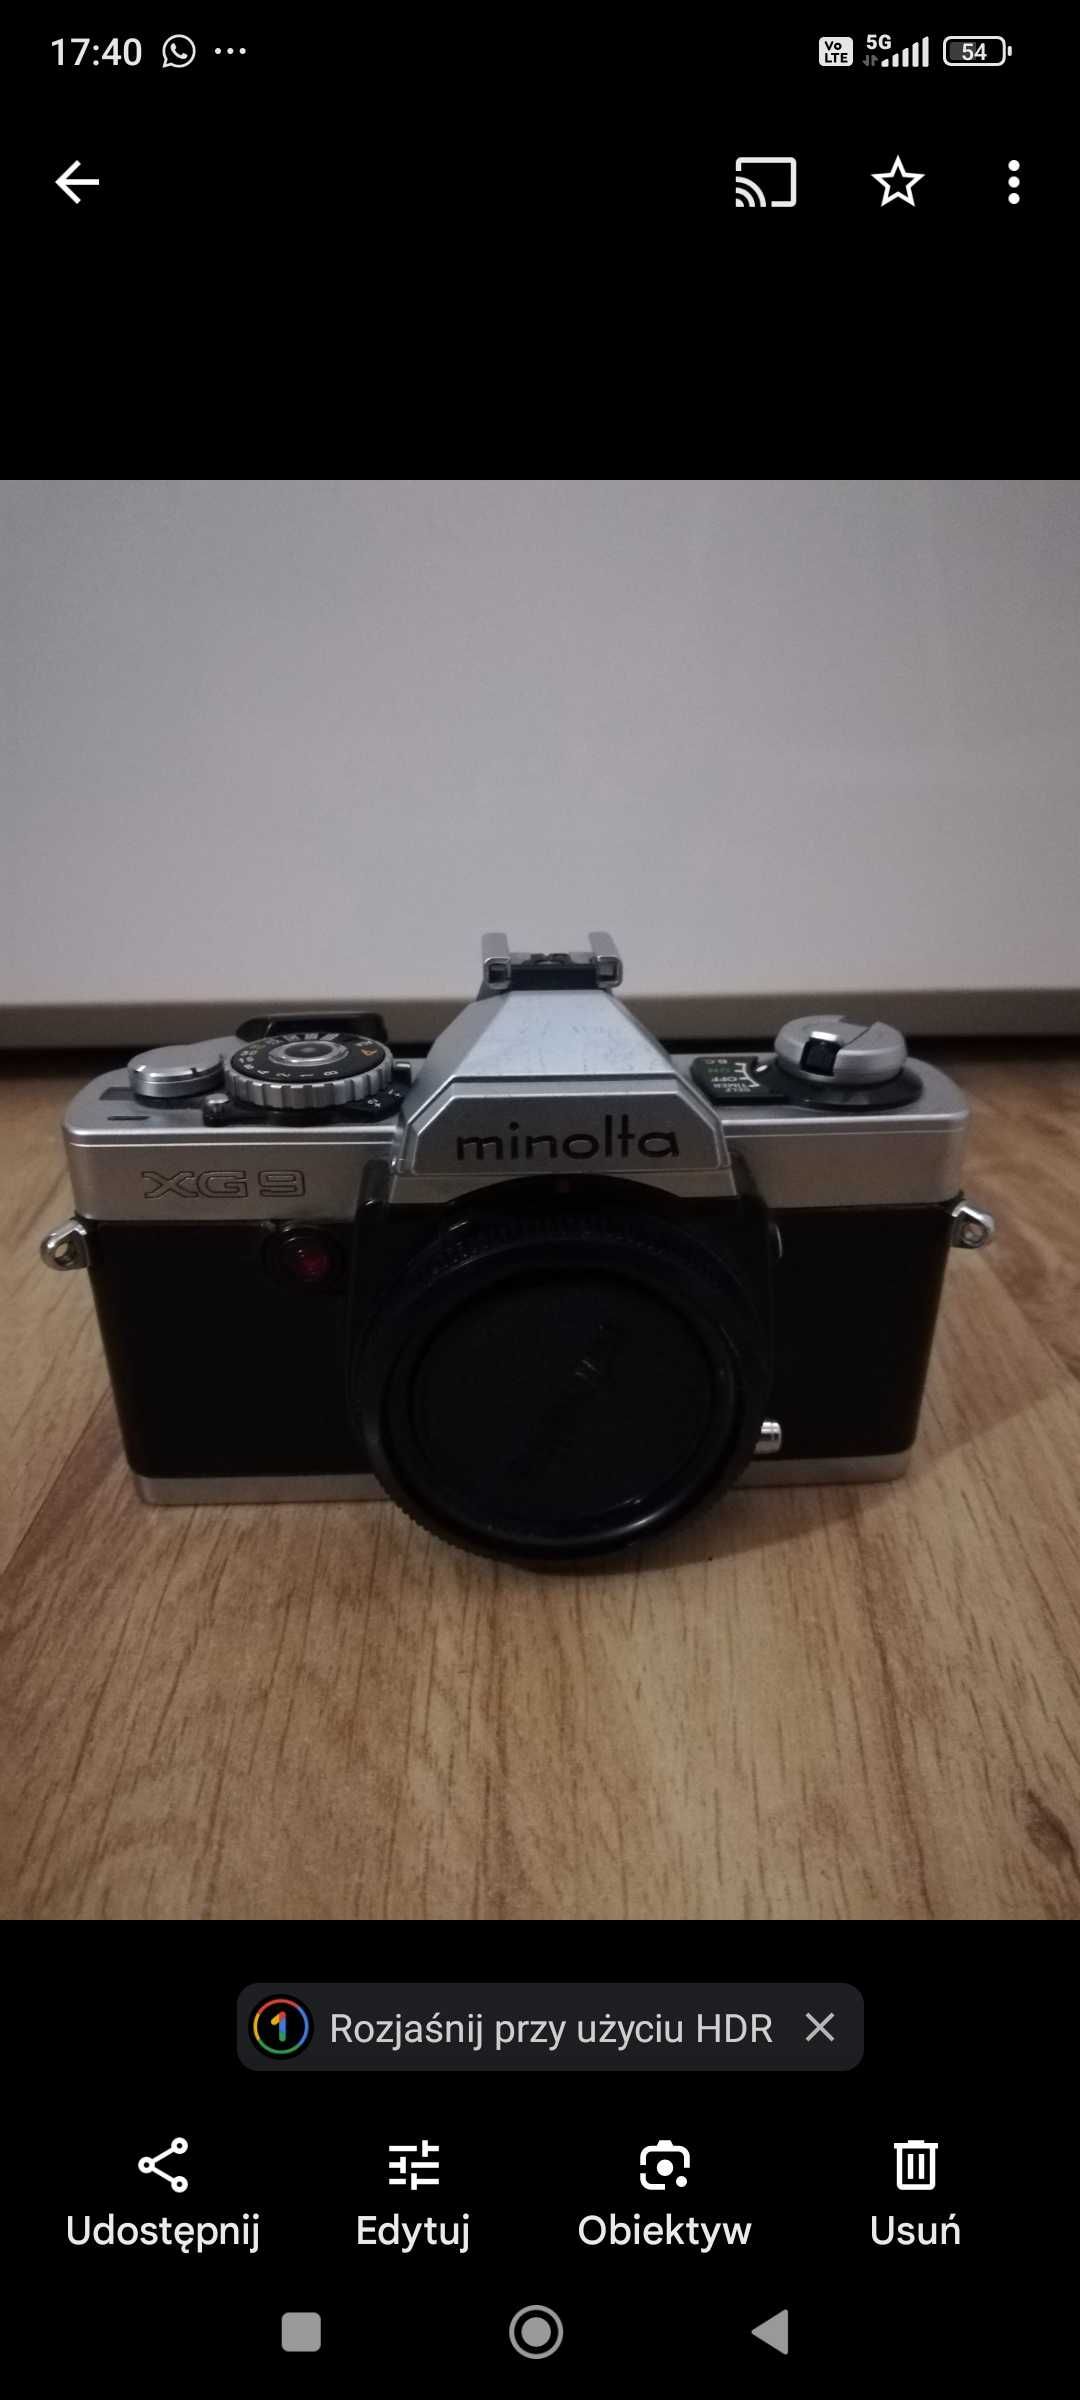 Sprzedam aparaty fotograficzne minolta xg9 i Minolta xd 7 całosc